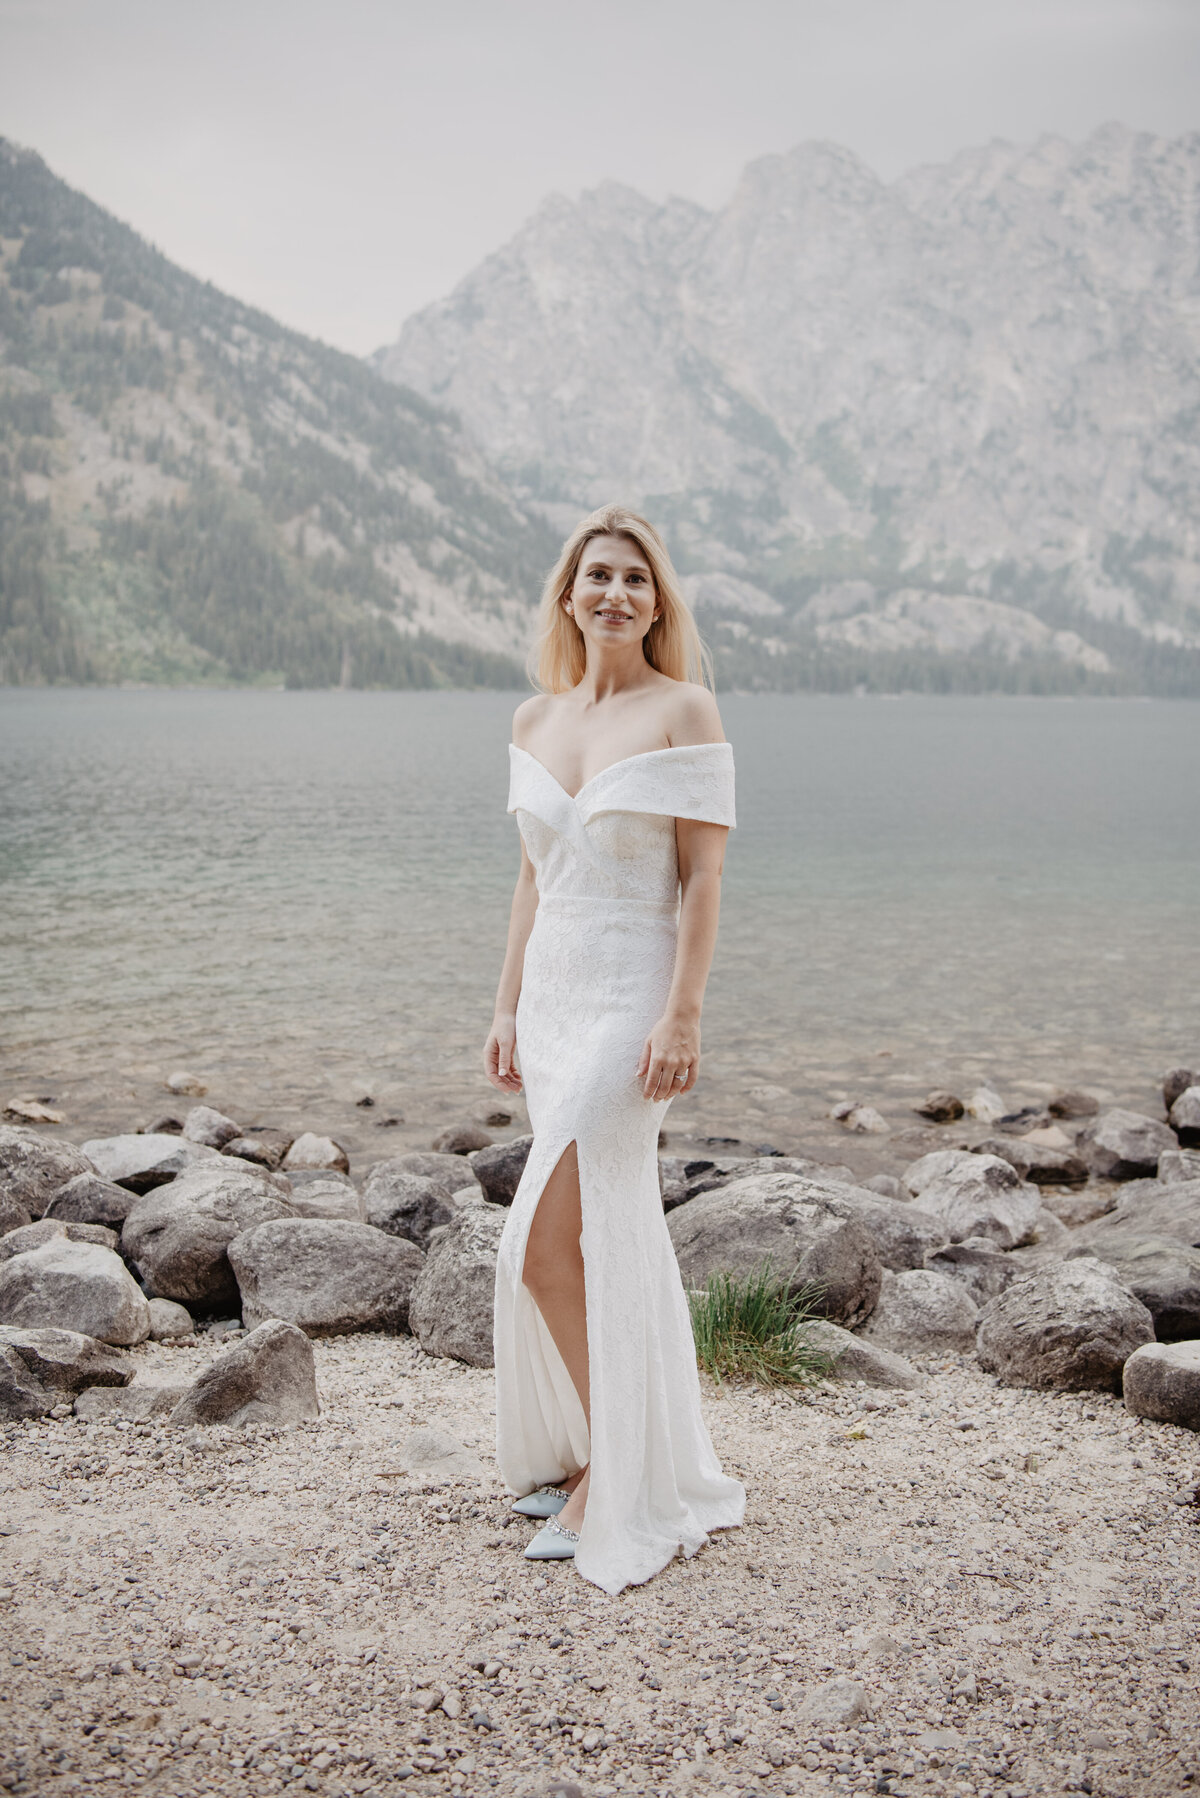 Photographers Jackson Hole capture bride wearing wedding dress